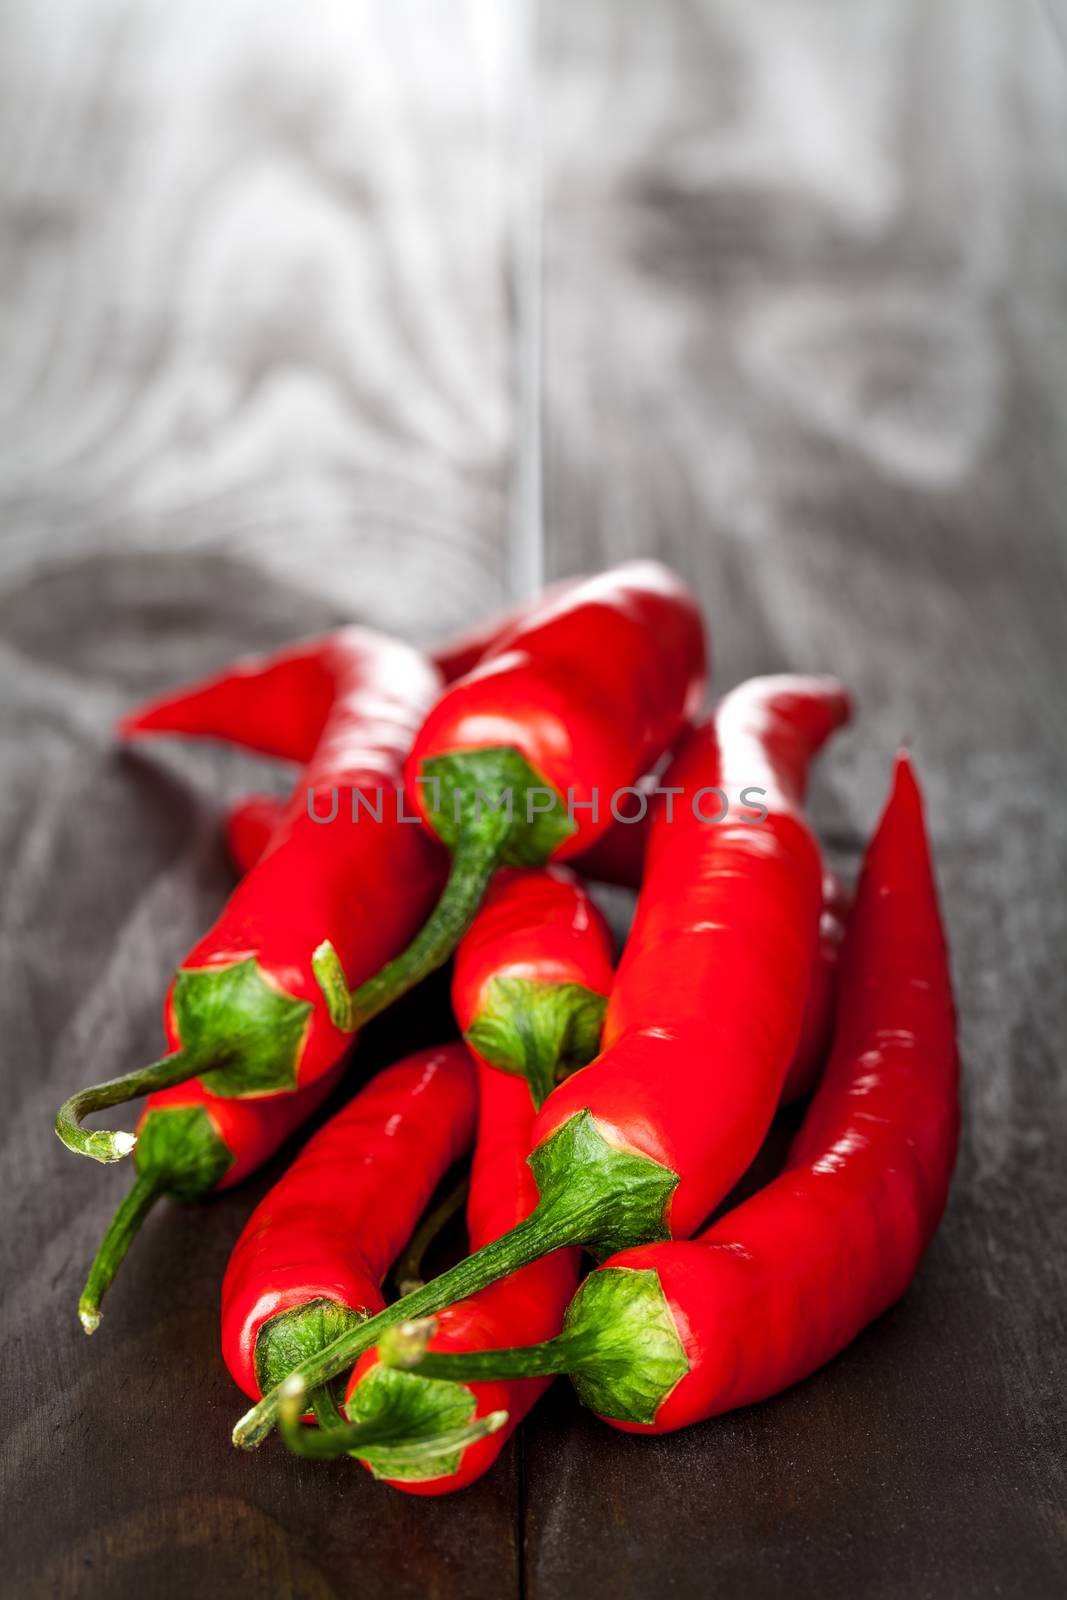 Chilli Pepper by bozena_fulawka